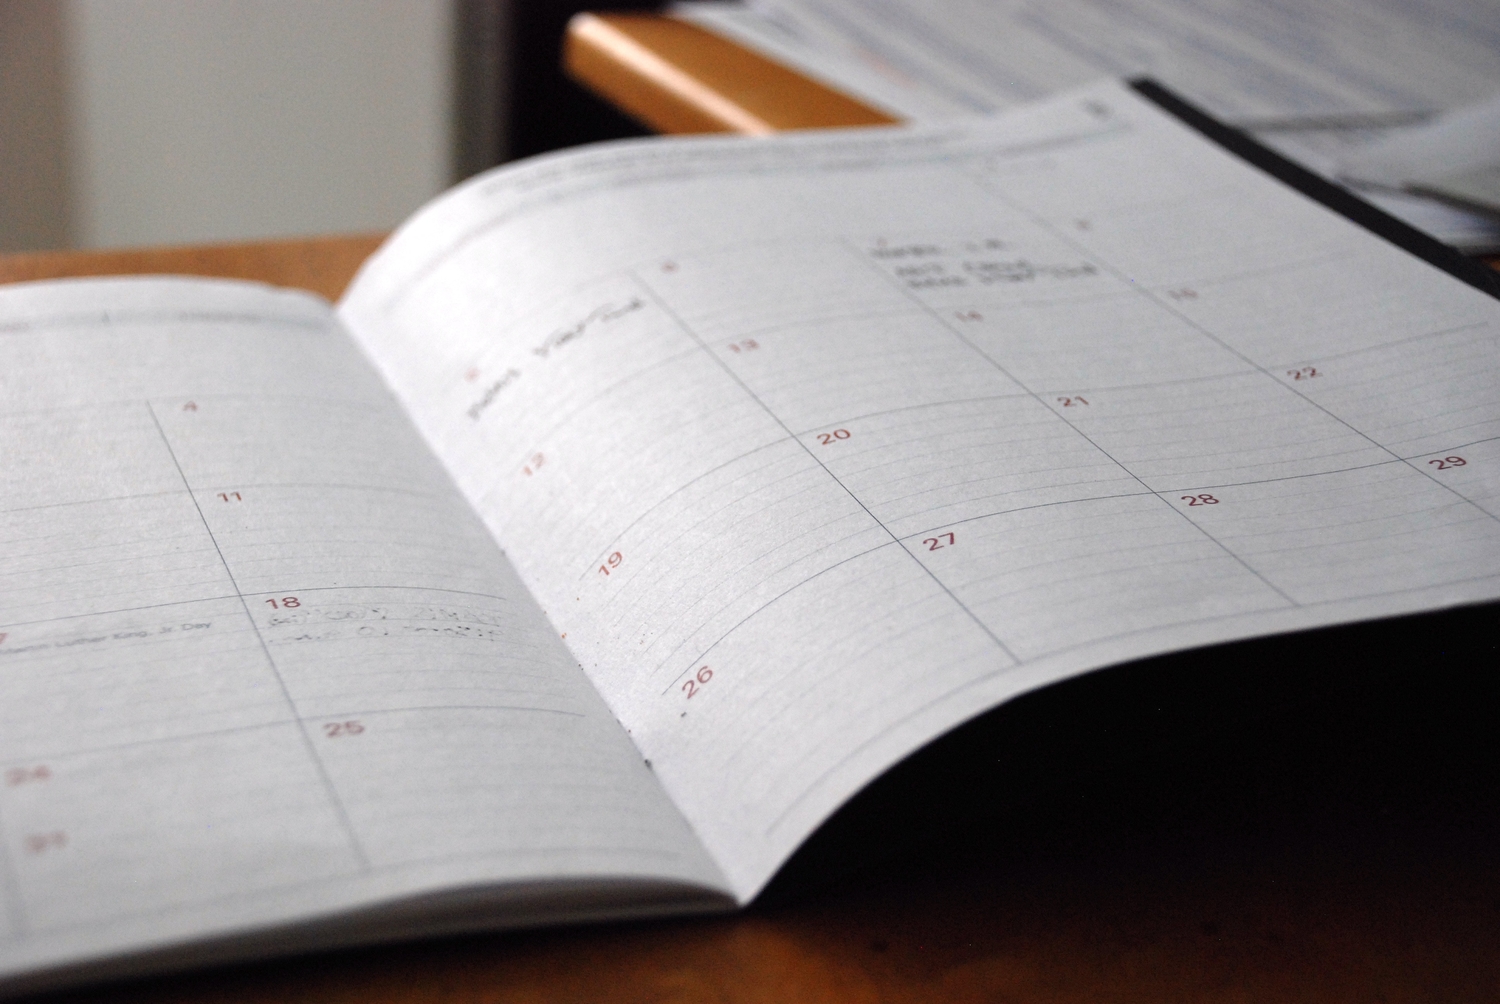 an open calendar or planner